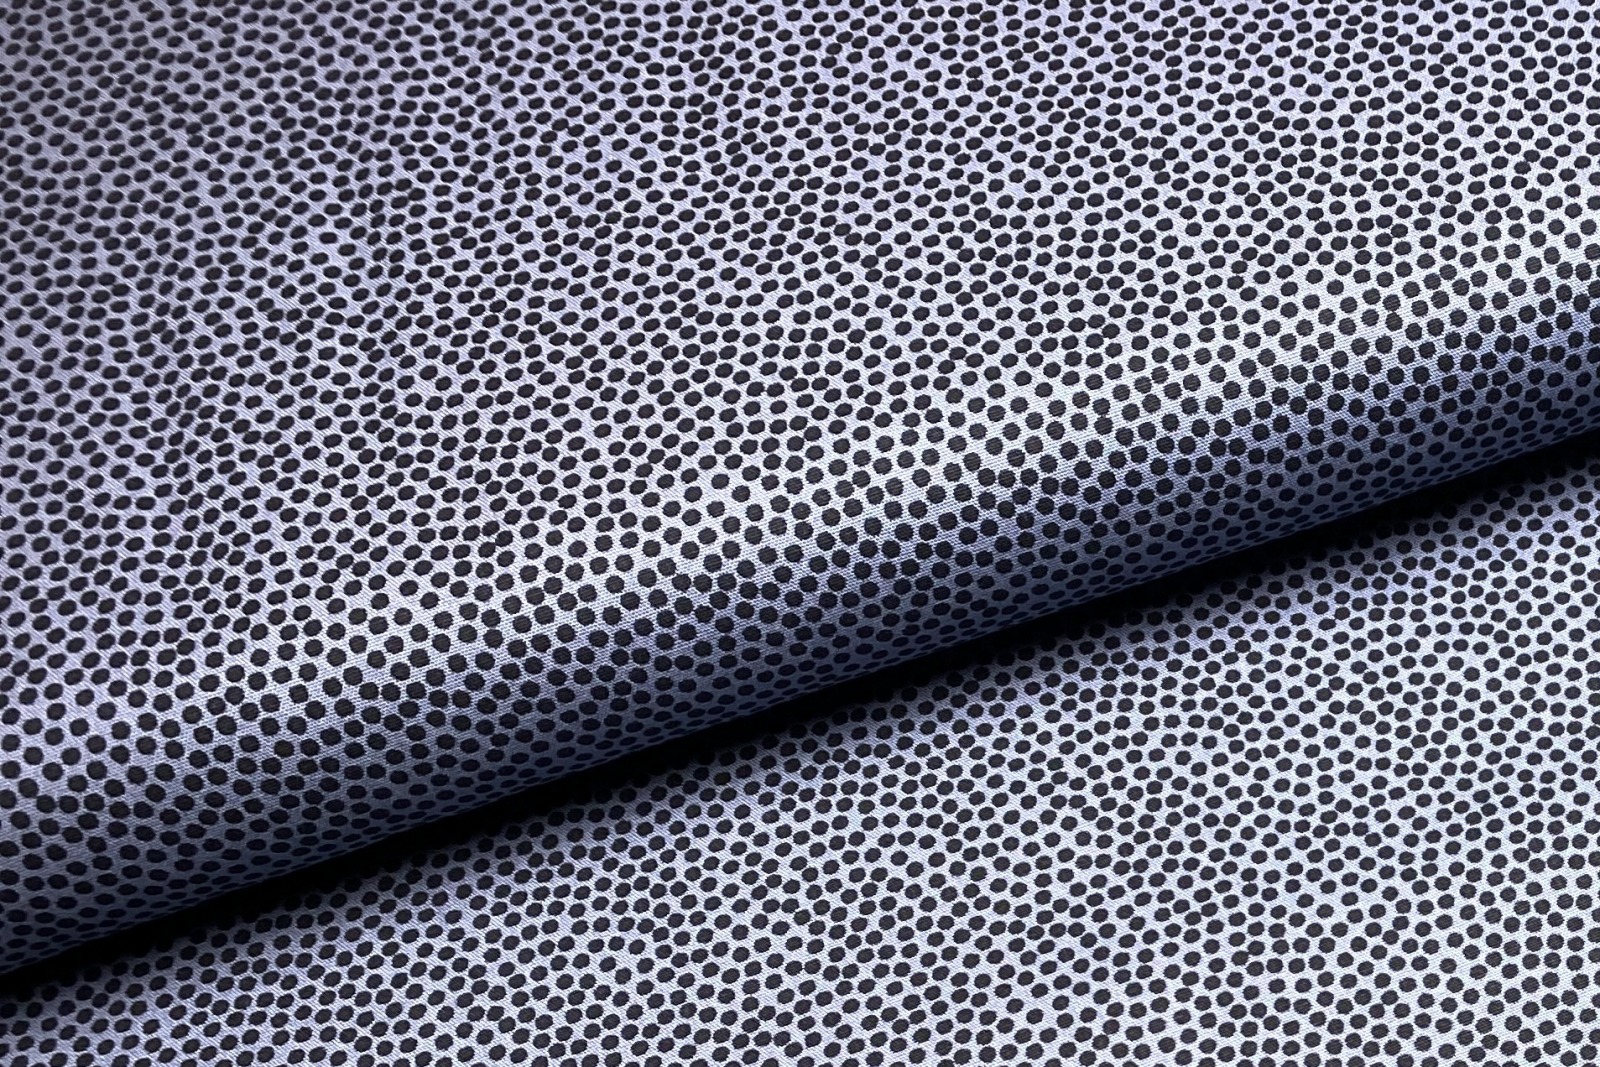 Baumwollwebware - unregelmäßige Punkte - dunkelgrau/schwarz - 100% Baumwolle - Dotty - Swafing 3